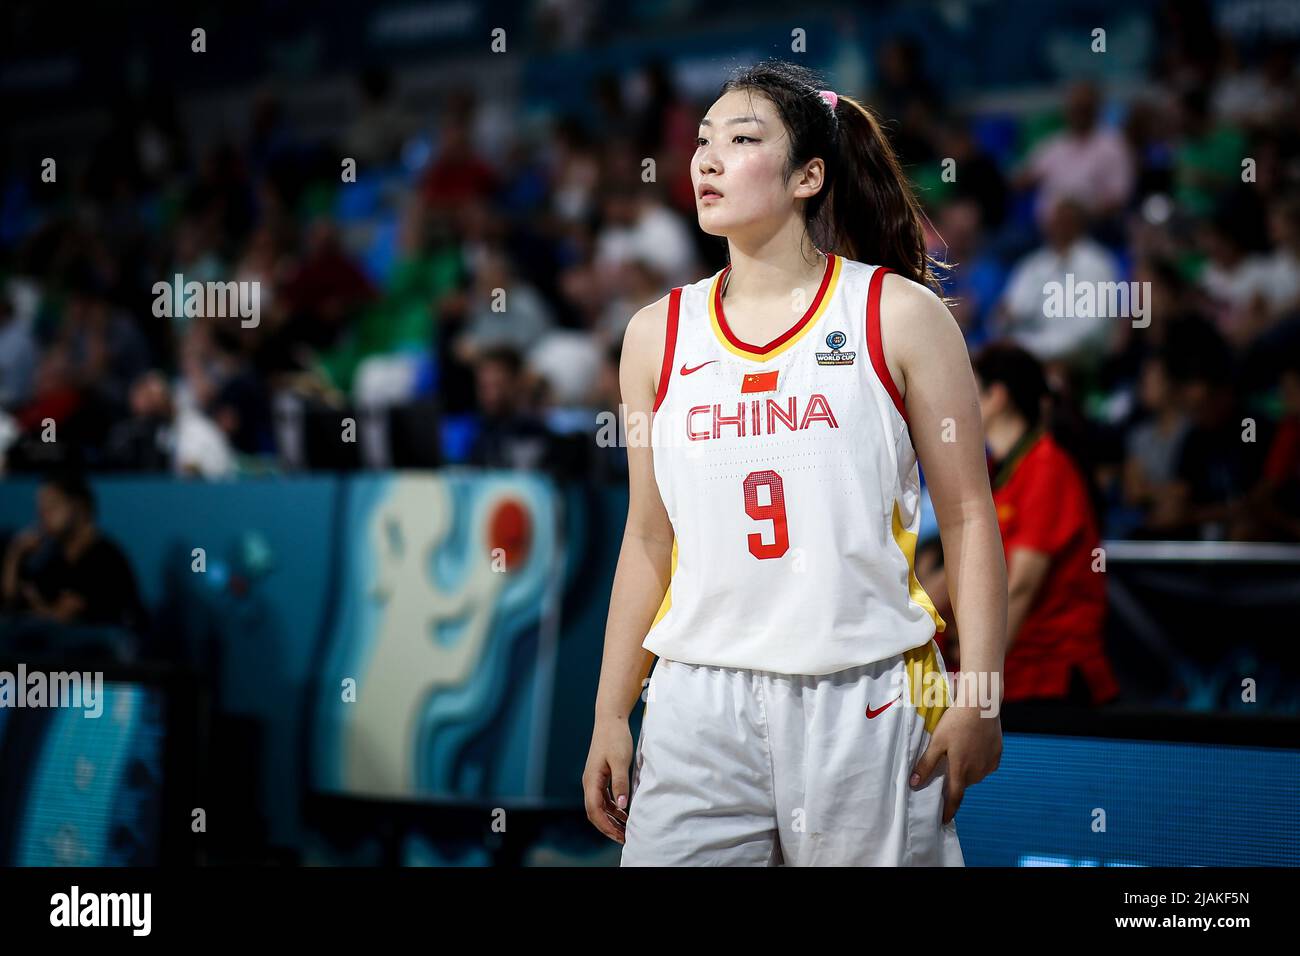 Spanien, Teneriffa, 26. September 2018: Die chinesische Basketballspielerin Li Meng während der Basketball-Weltmeisterschaft der Frauen Stockfoto